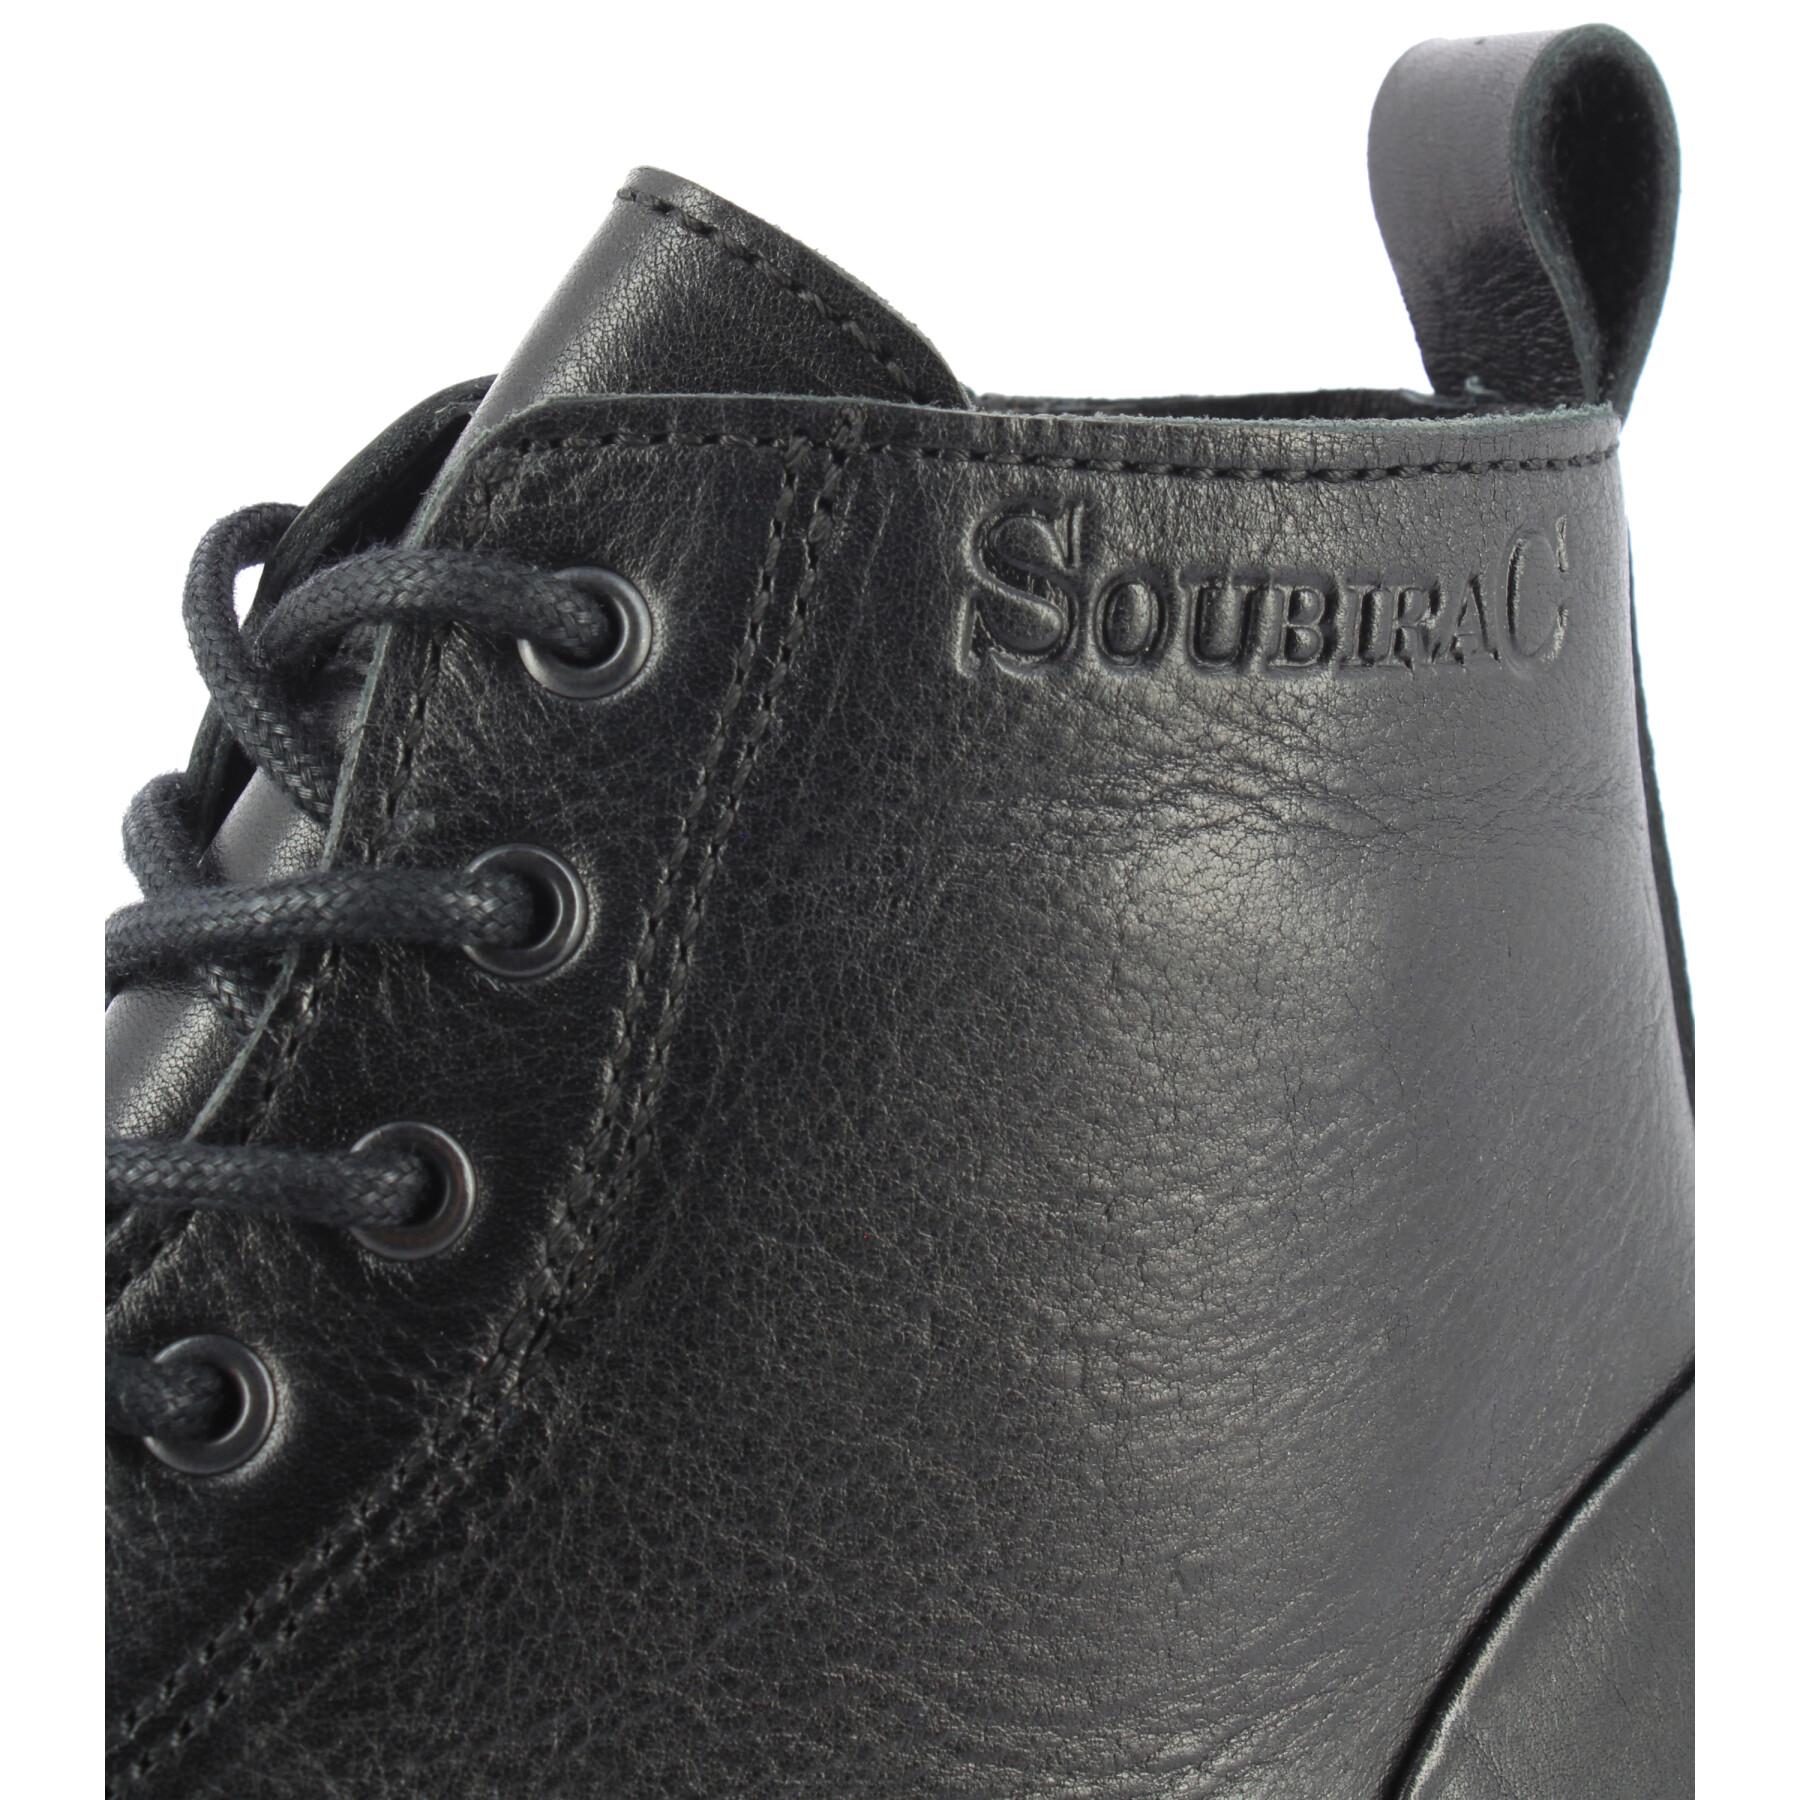 Shoes Soubirac watson